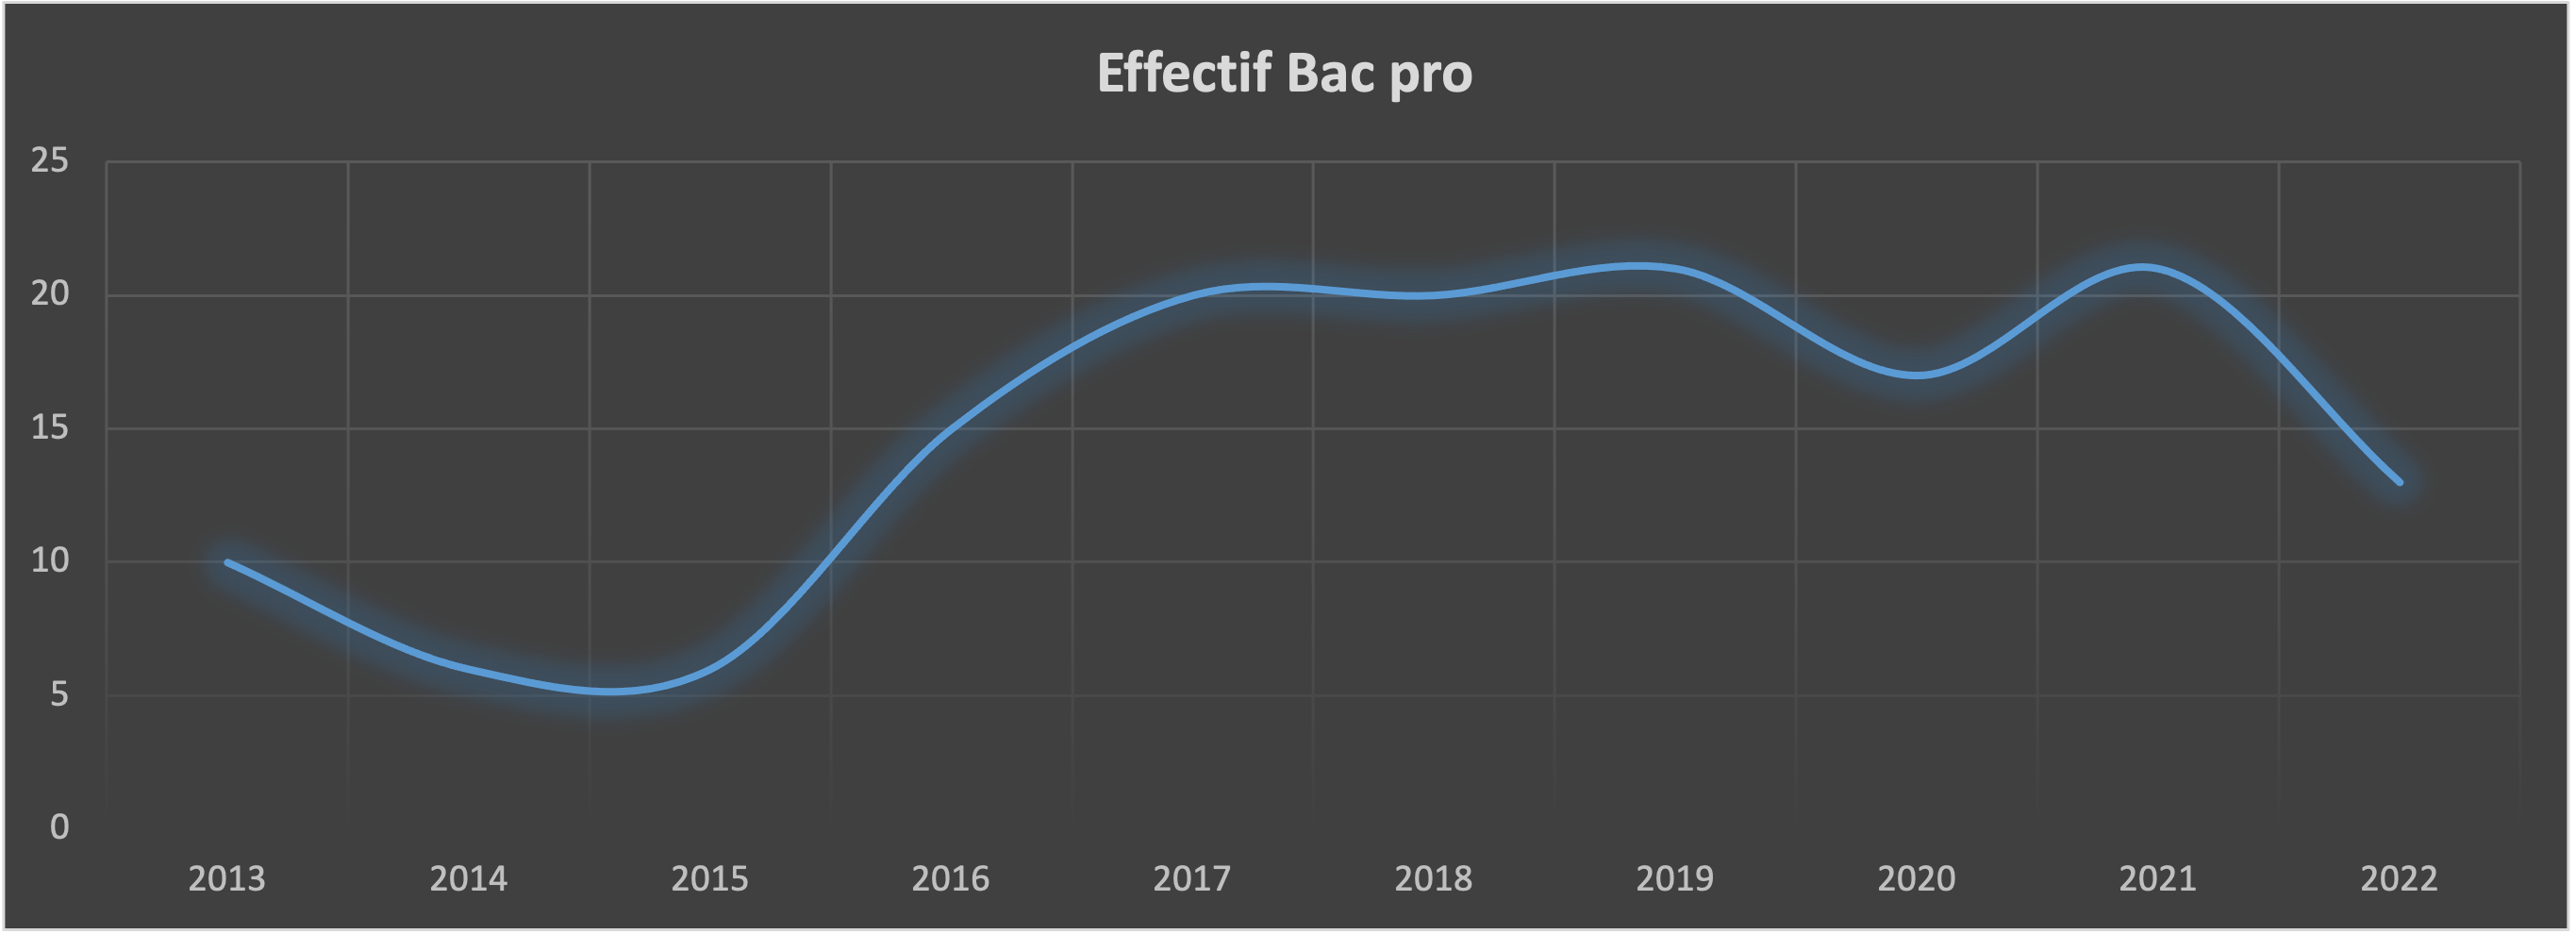 Effectif Bac Pro 2022